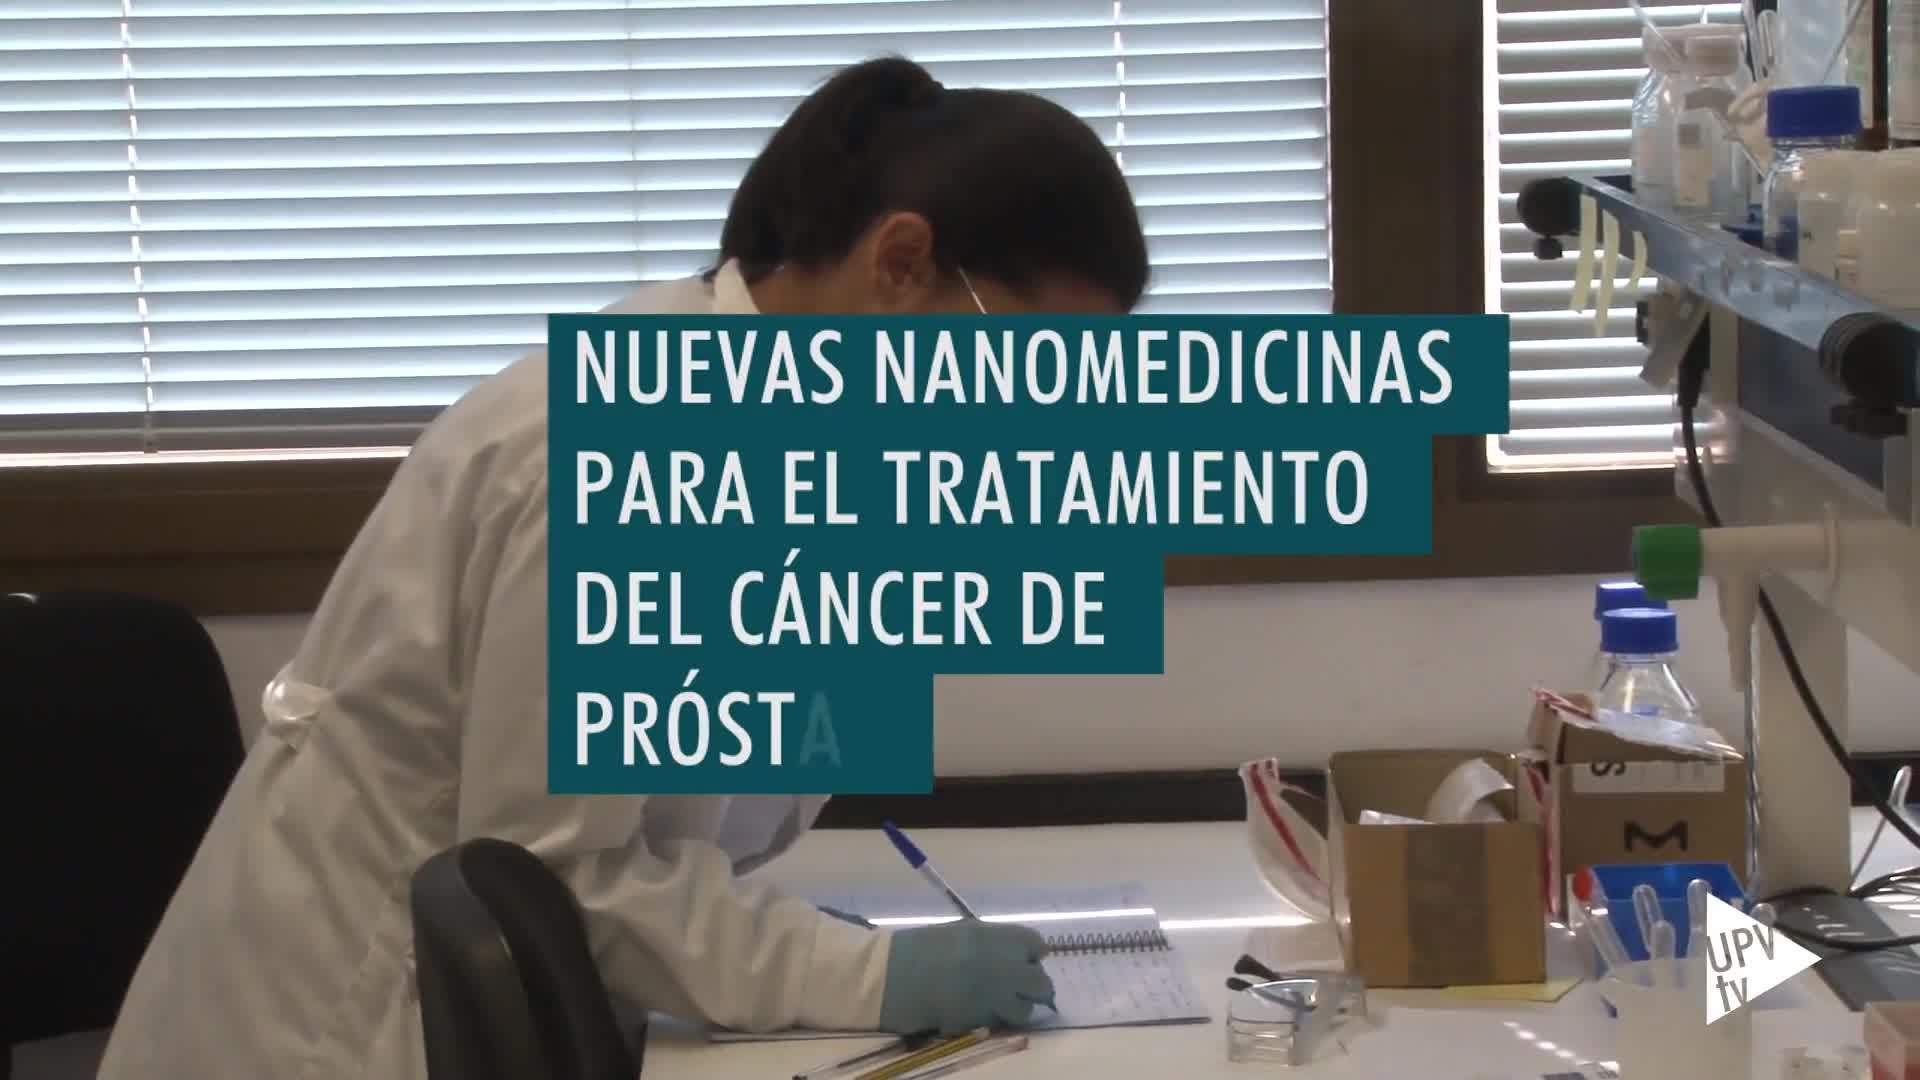 18-02-2019 Nanomedicinas contra el cáncer de próstata